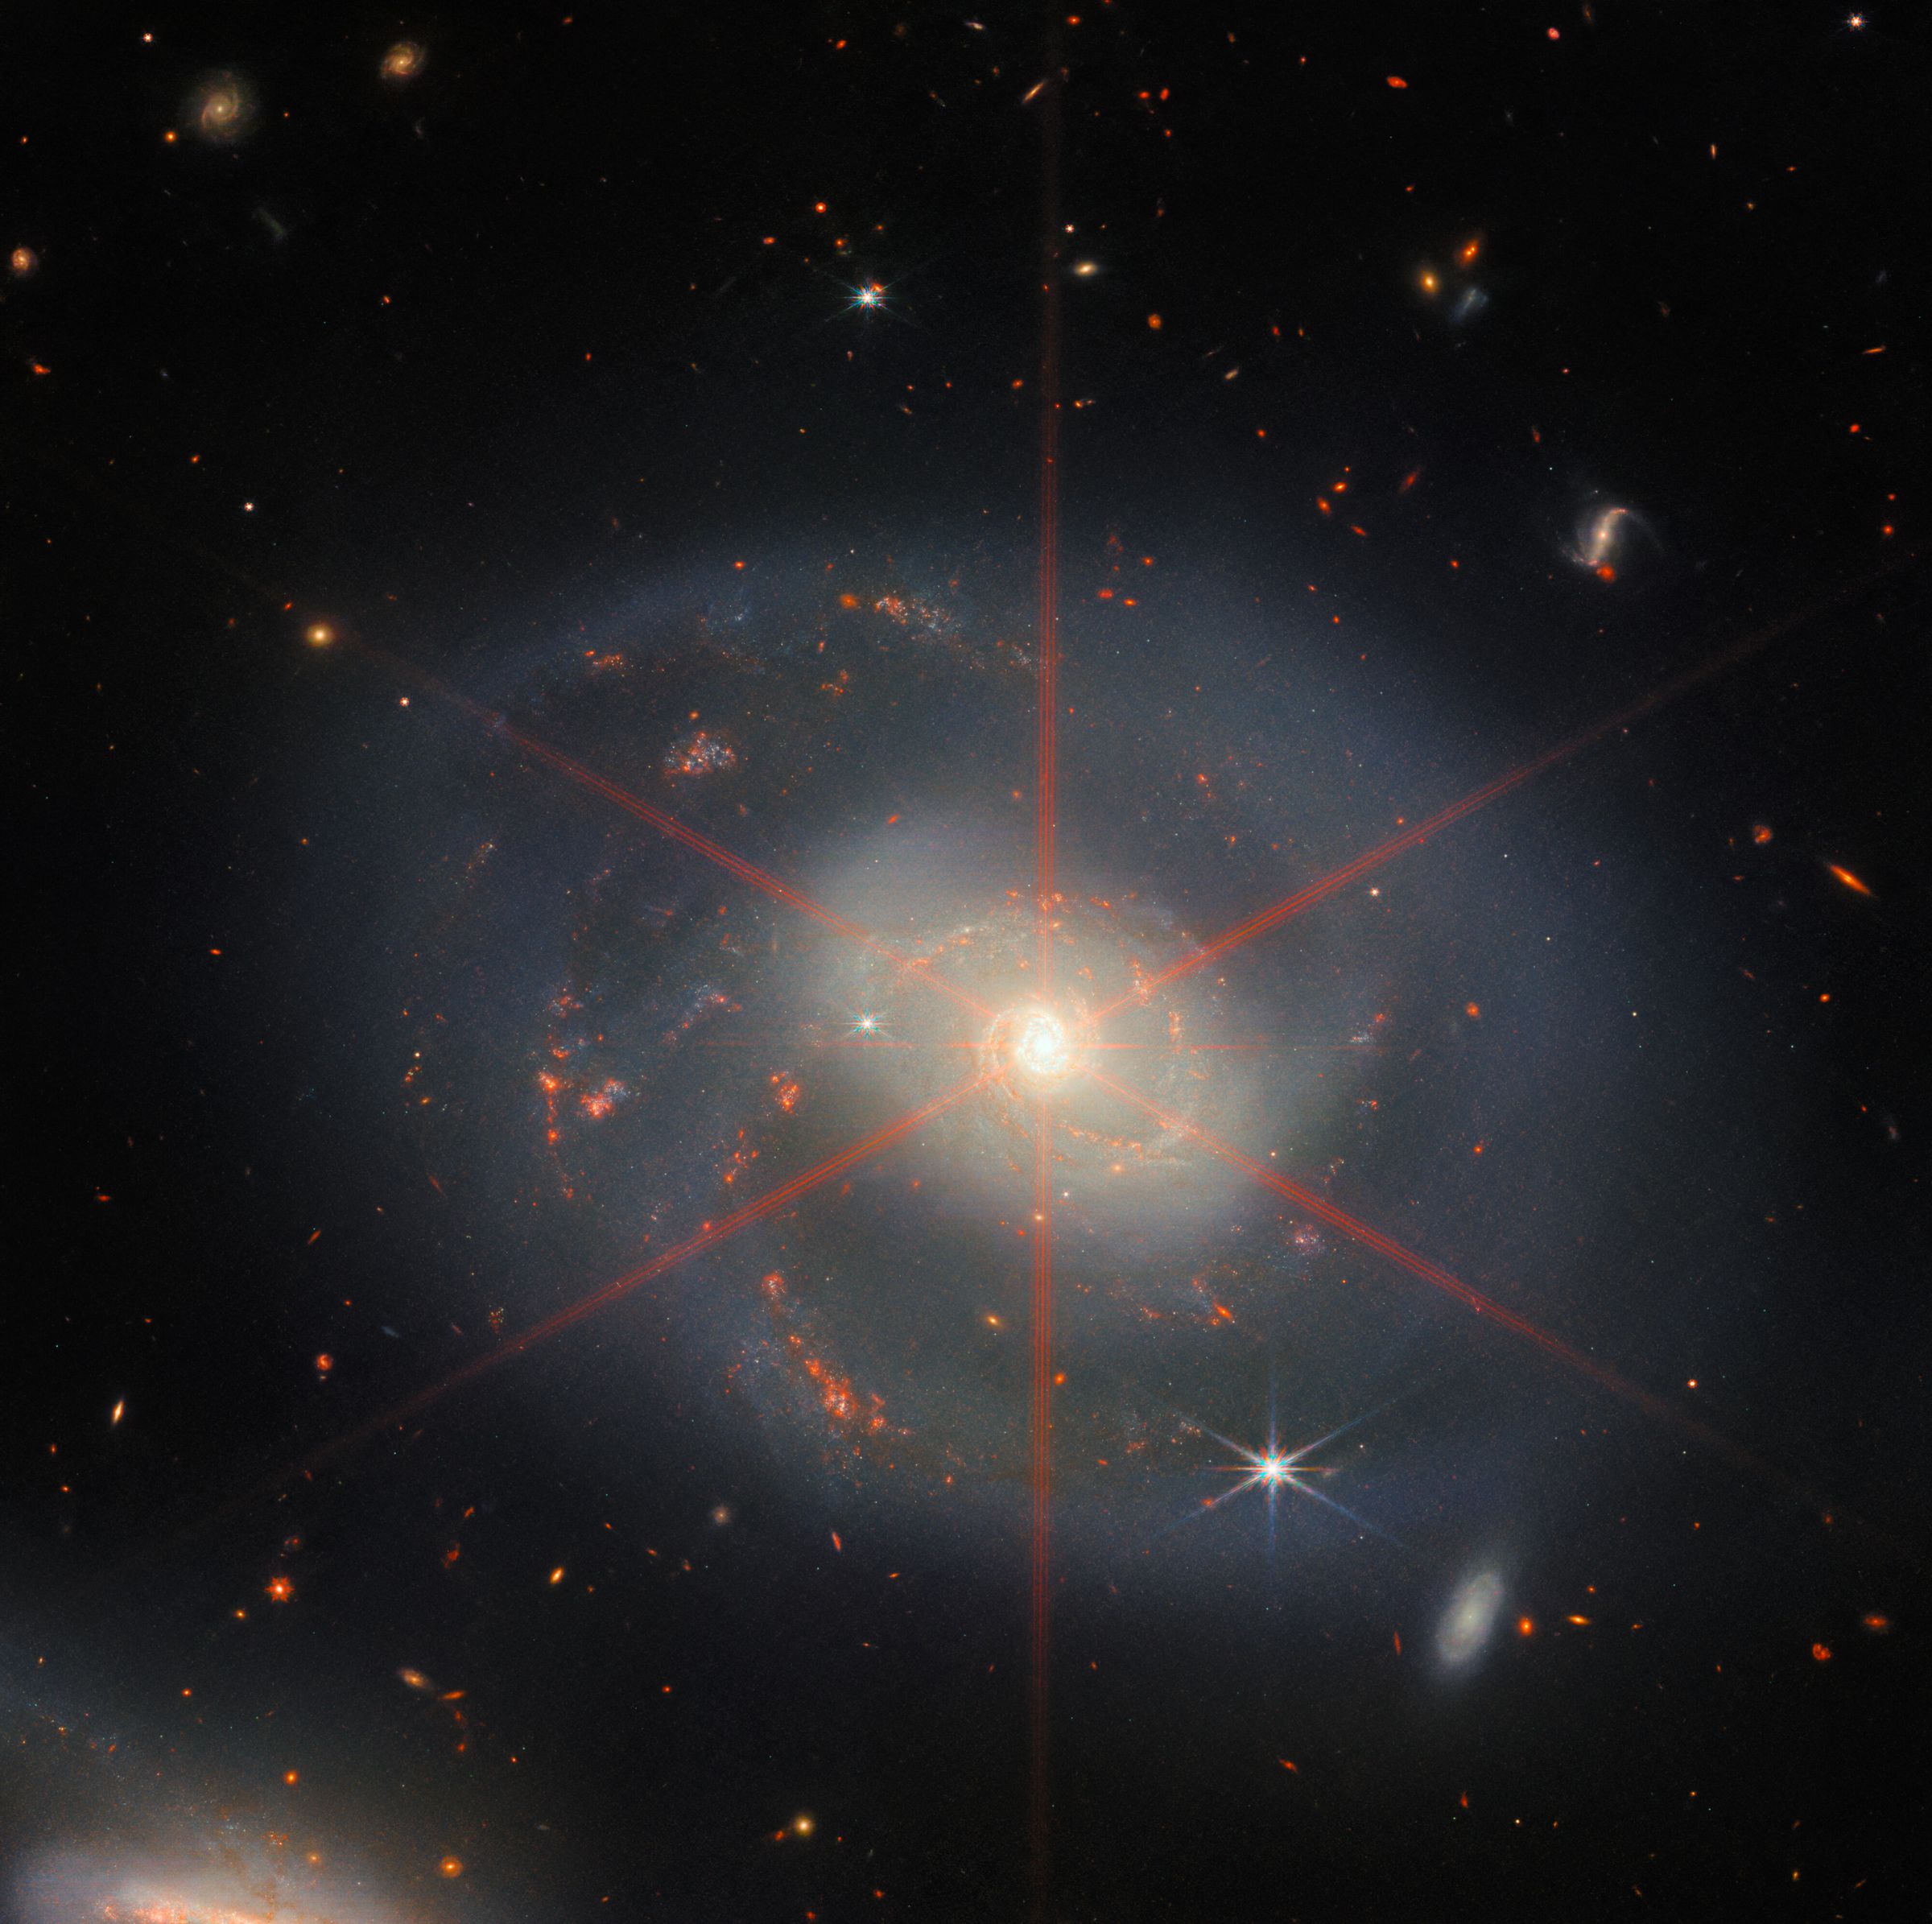 Ова слика приказује спиралну галаксију којом доминира светла централна област.  Галаксија има плаво-љубичасте нијансе са наранџасто-црвеним регионима испуњеним звездама.  Такође се може видети велики дифракцијски шиљак, који се појављује као звездани узорак изнад централног региона галаксије.  Много звезда и галаксија испуњава позадински пејзаж